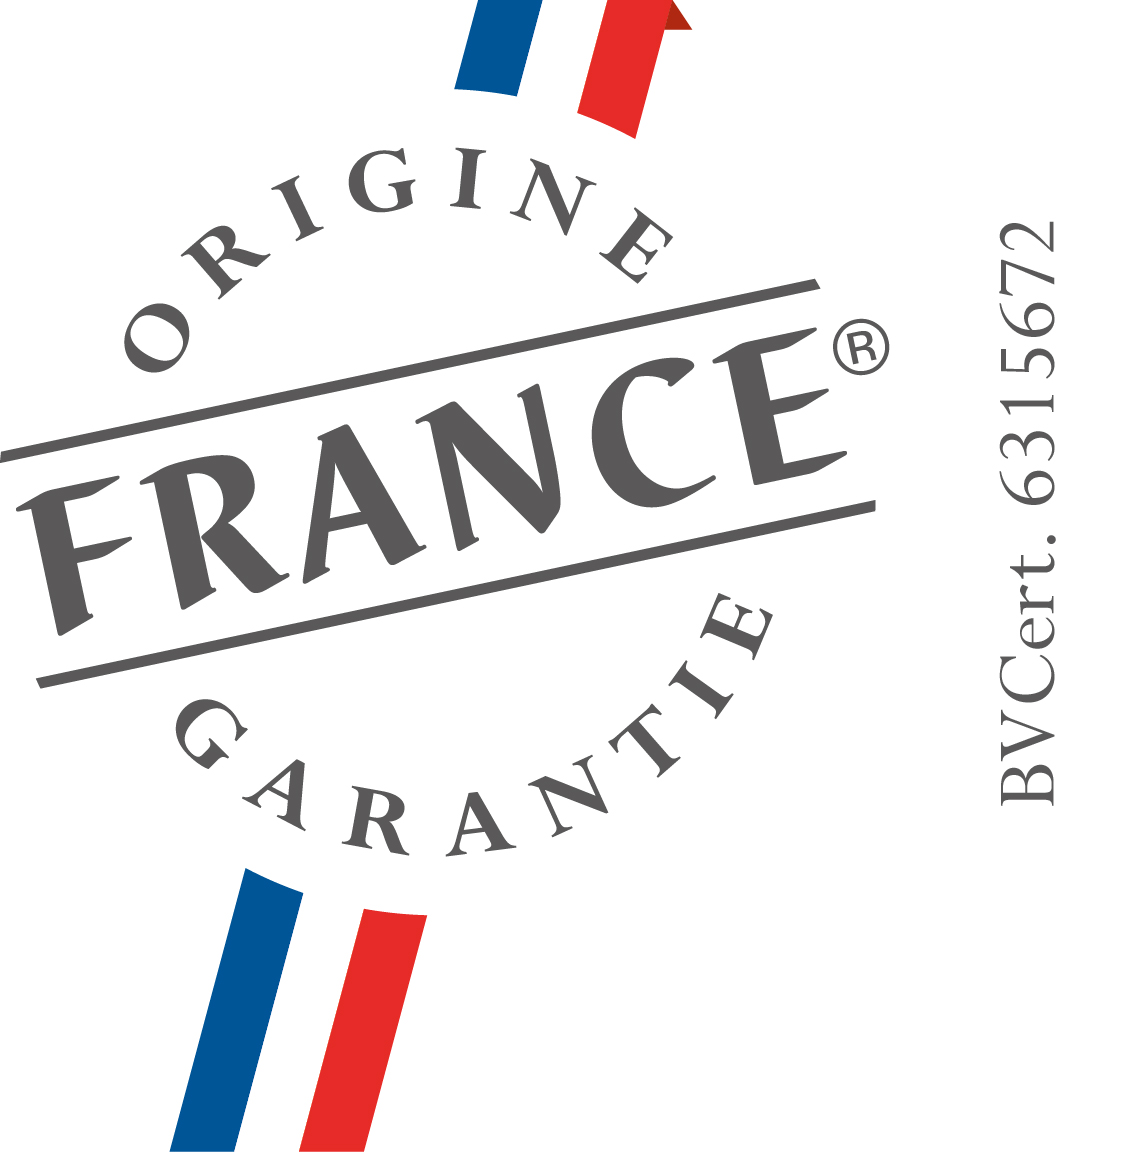 Bioconcept obtient la certification « Origine France Garantie » pour ses e-liquides